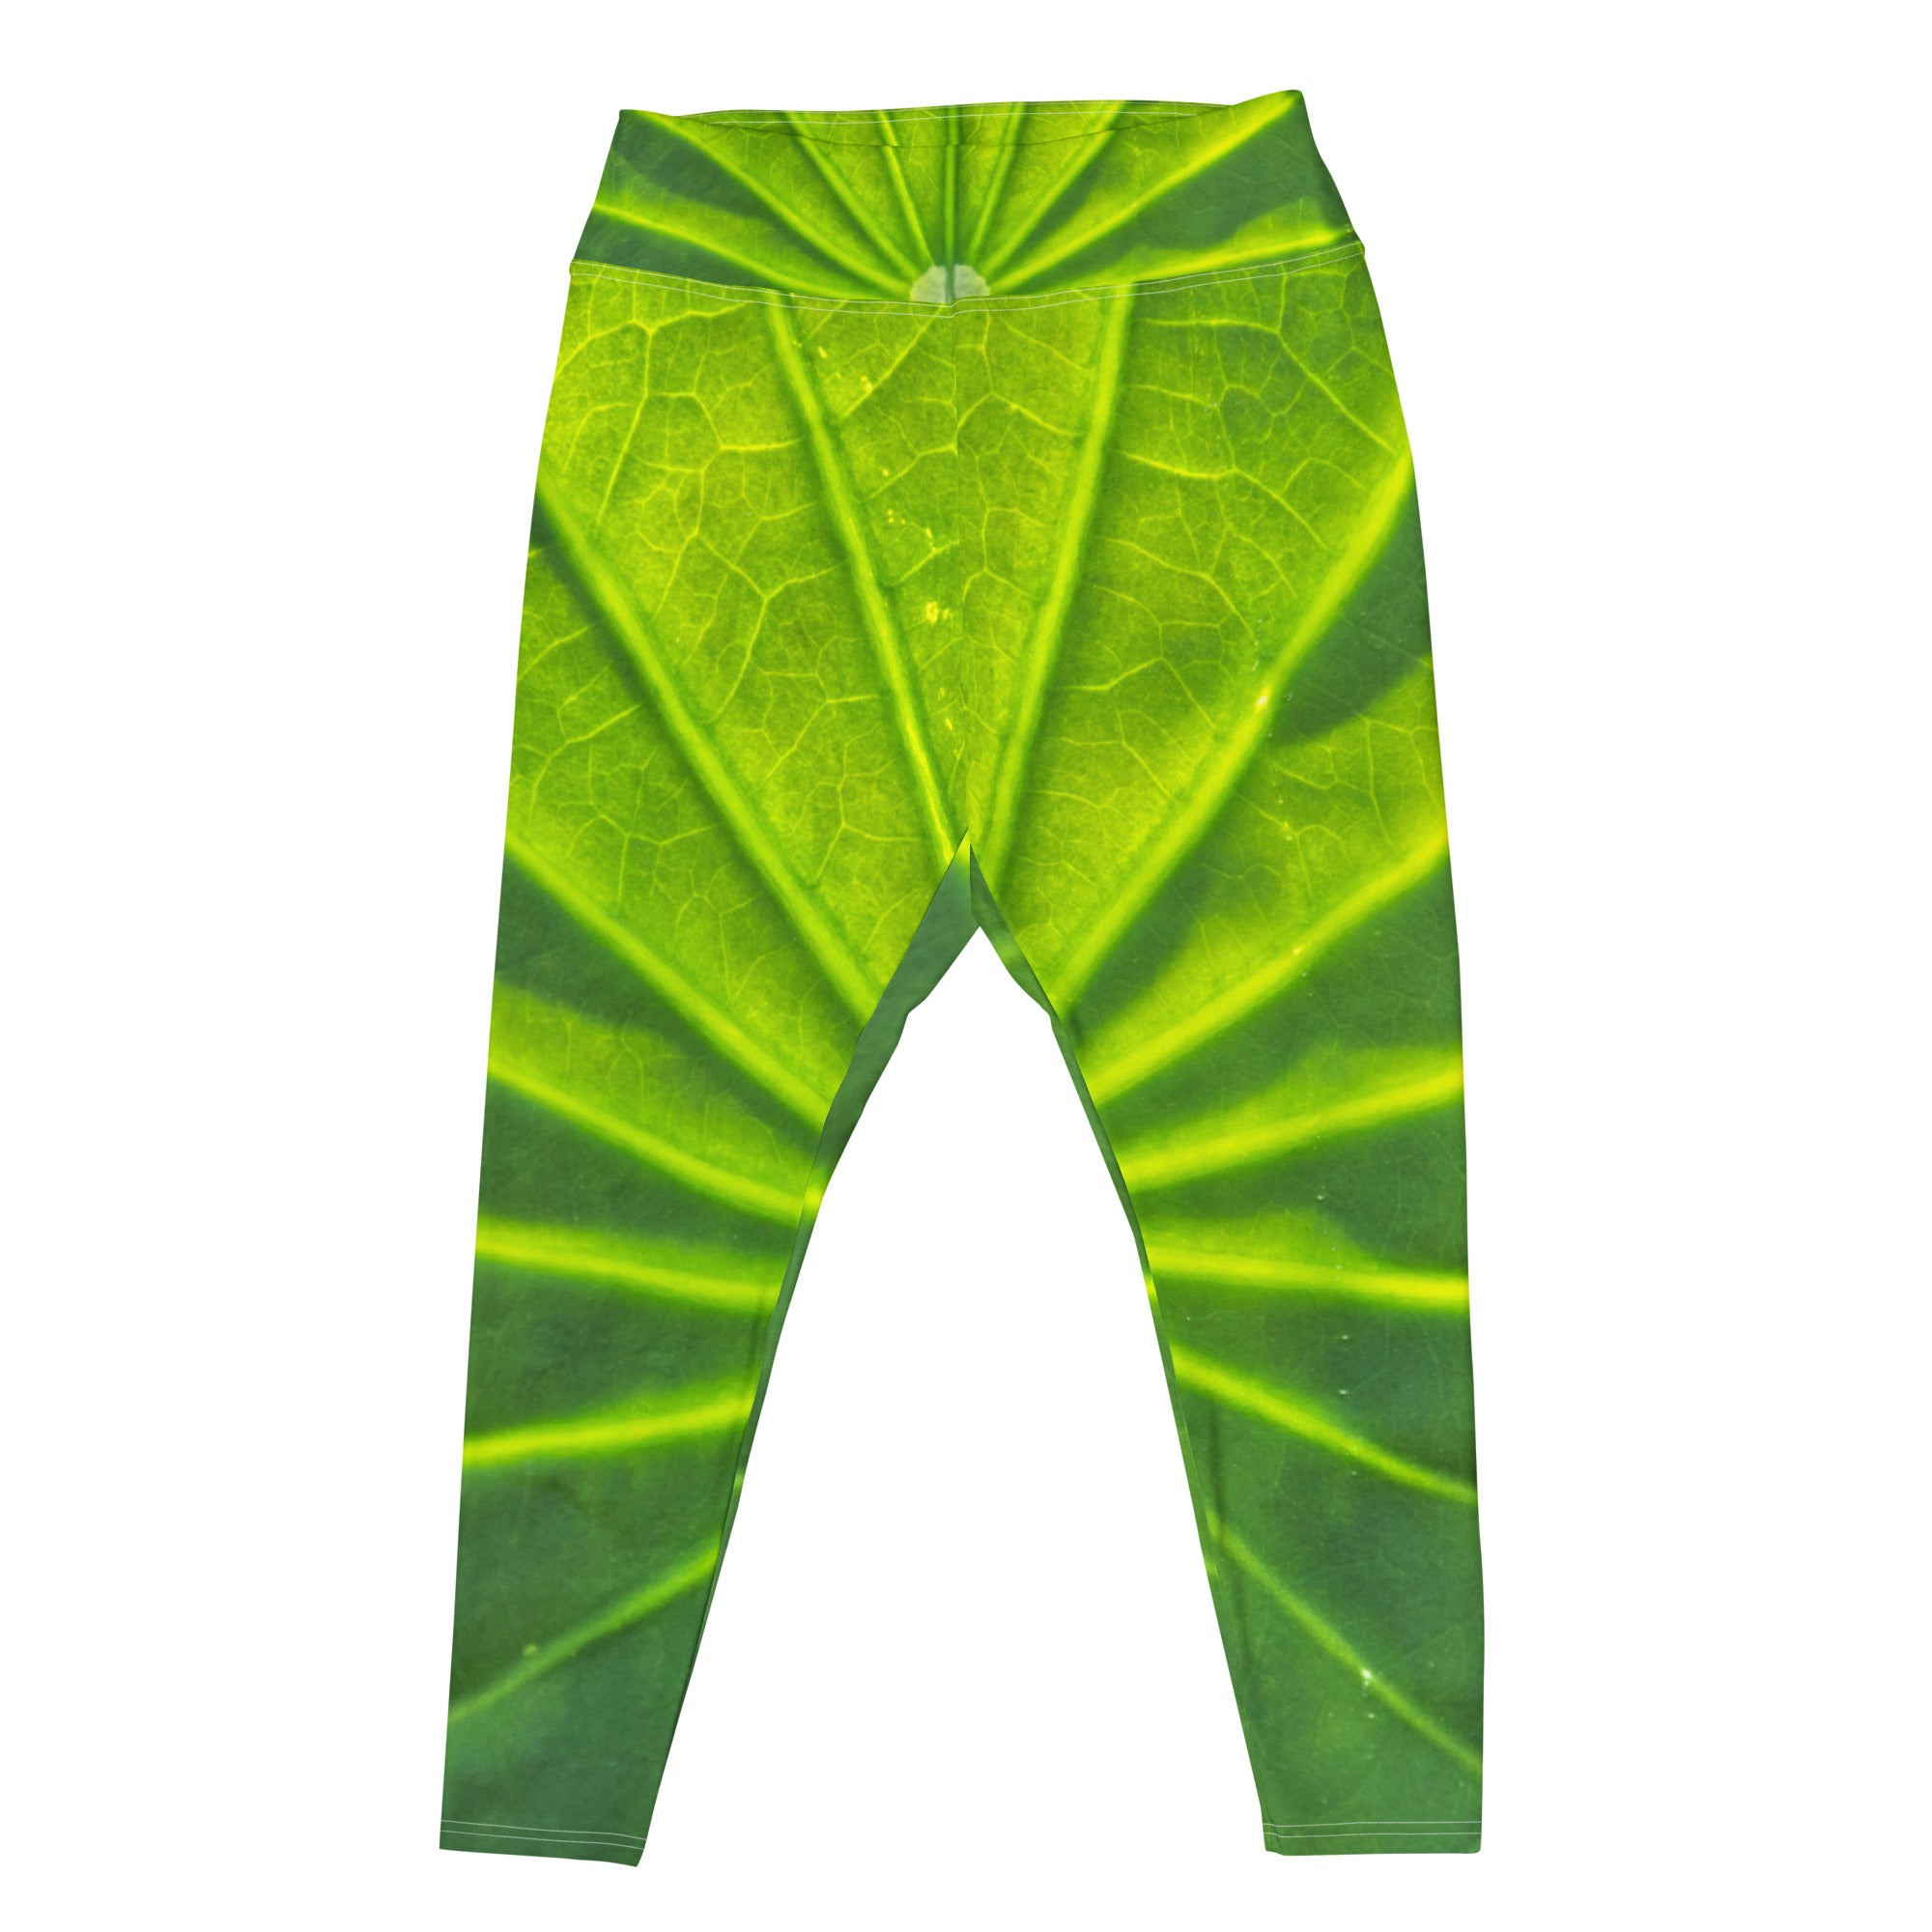 Ardene Sponge Fleece Chevron Leggings in Green, Size Small, Polyester/ Spandex